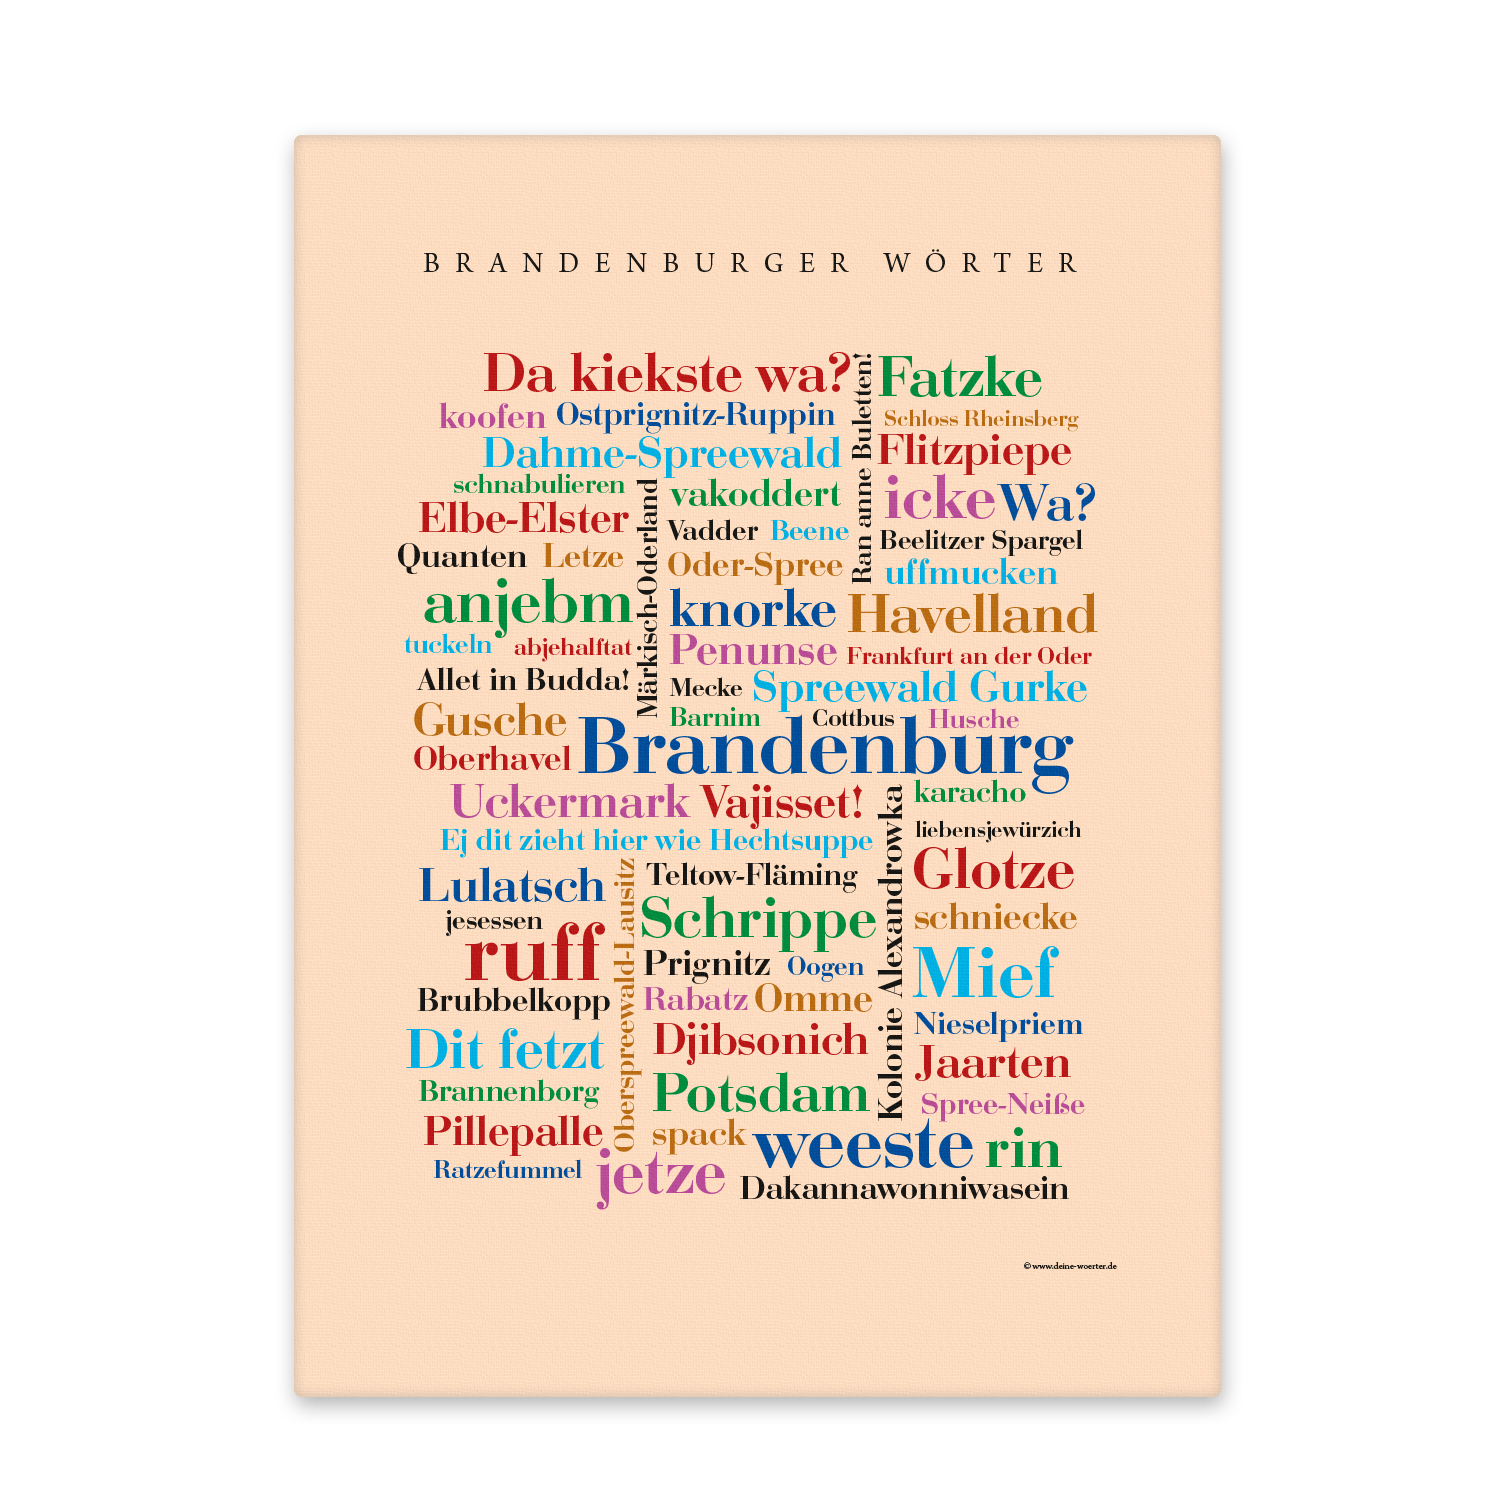 Leinwand Brandenburger Wörter – Keilrahmen